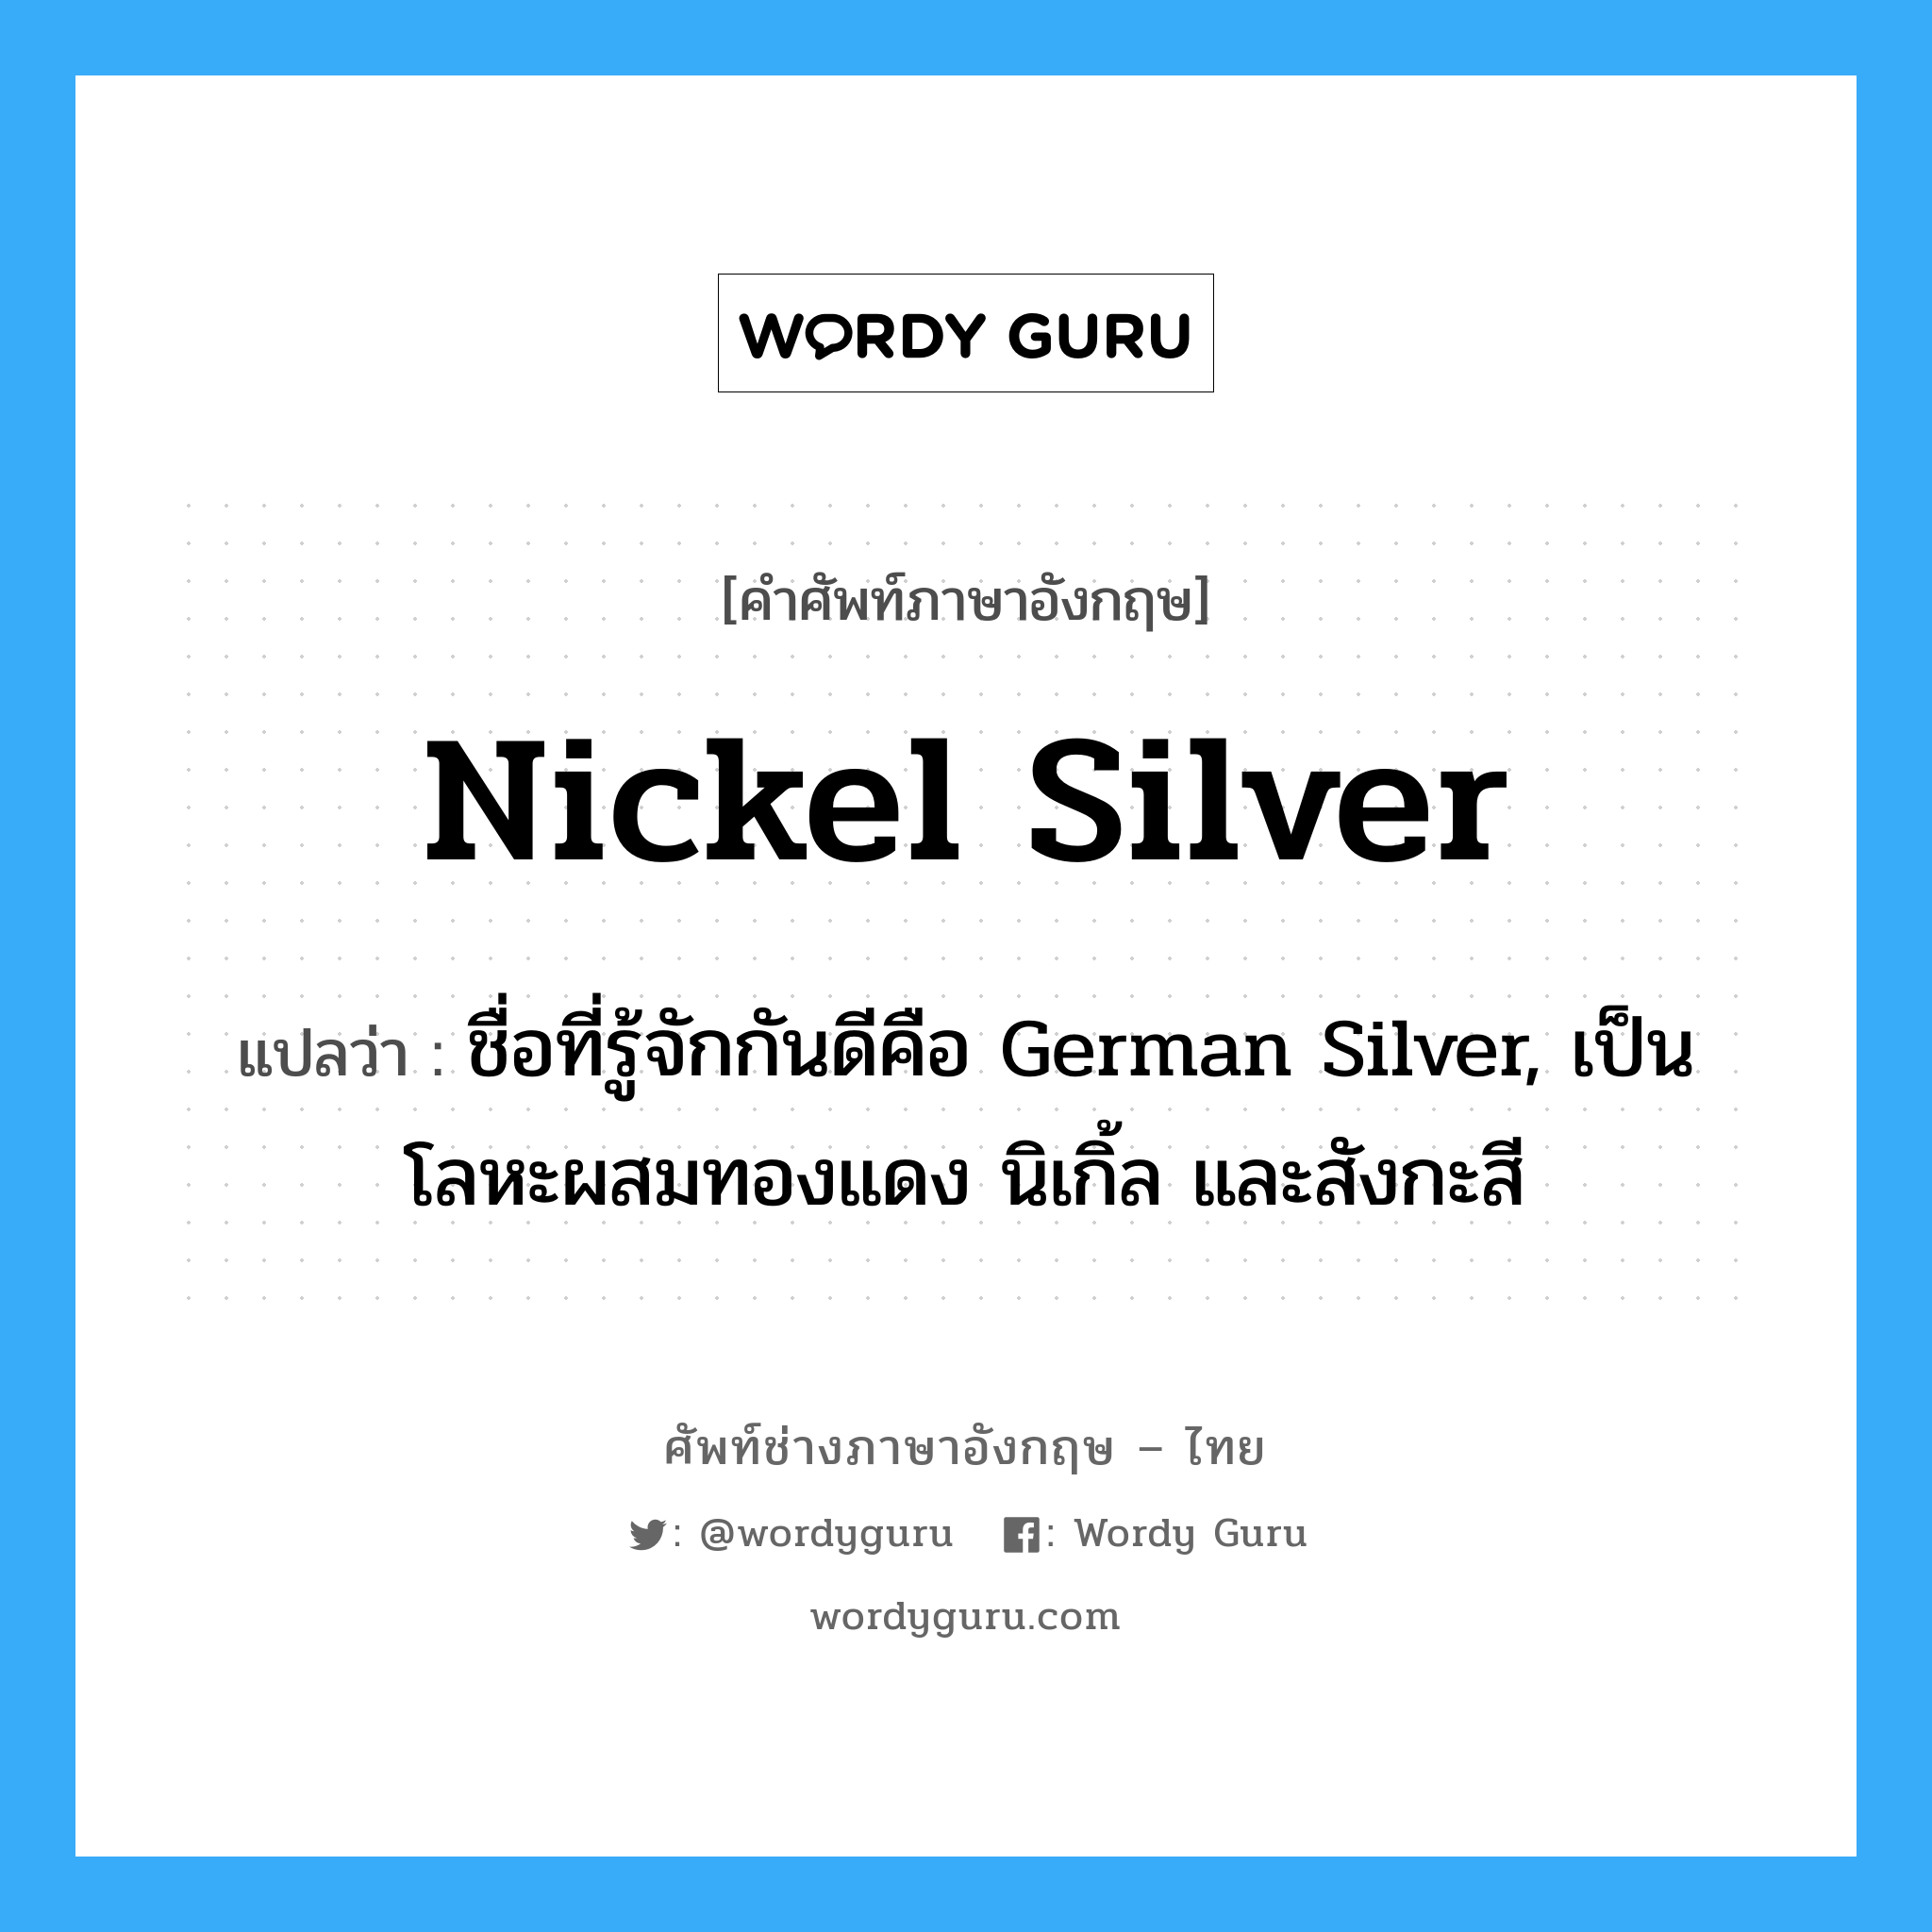 nickel silver แปลว่า?, คำศัพท์ช่างภาษาอังกฤษ - ไทย nickel silver คำศัพท์ภาษาอังกฤษ nickel silver แปลว่า ชื่อที่รู้จักกันดีคือ German Silver, เป็นโลหะผสมทองแดง นิเกิ้ล และสังกะสี